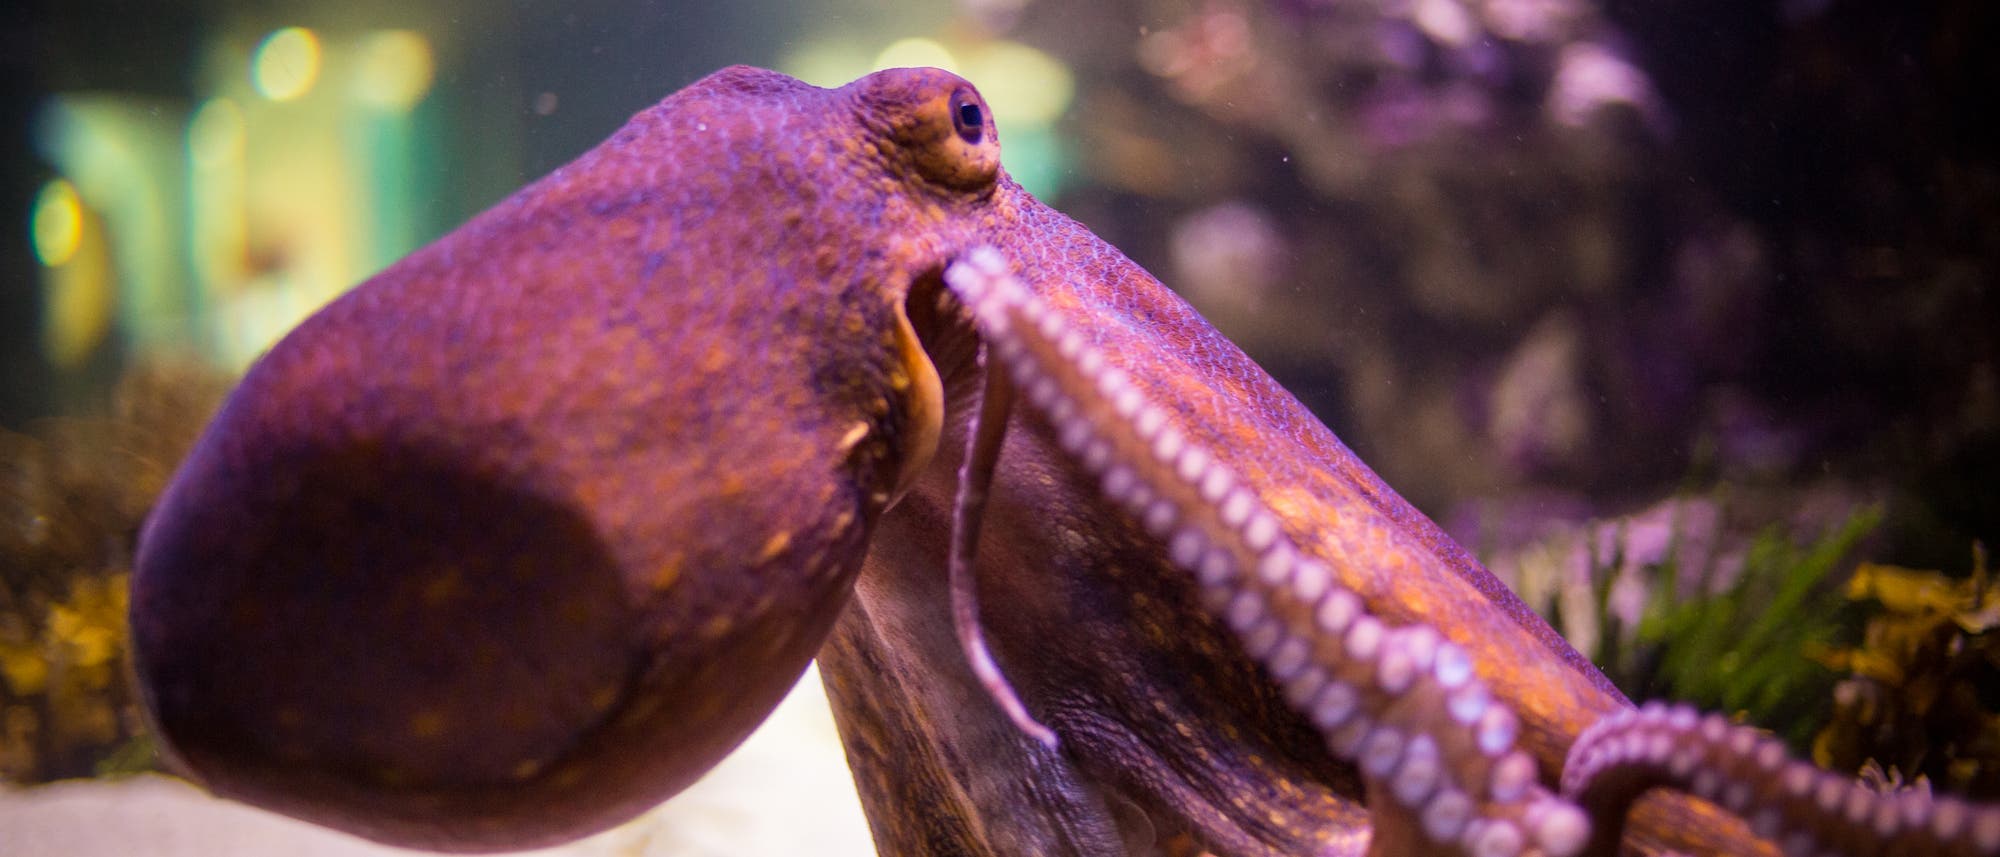 Oktopus im Aquarium.